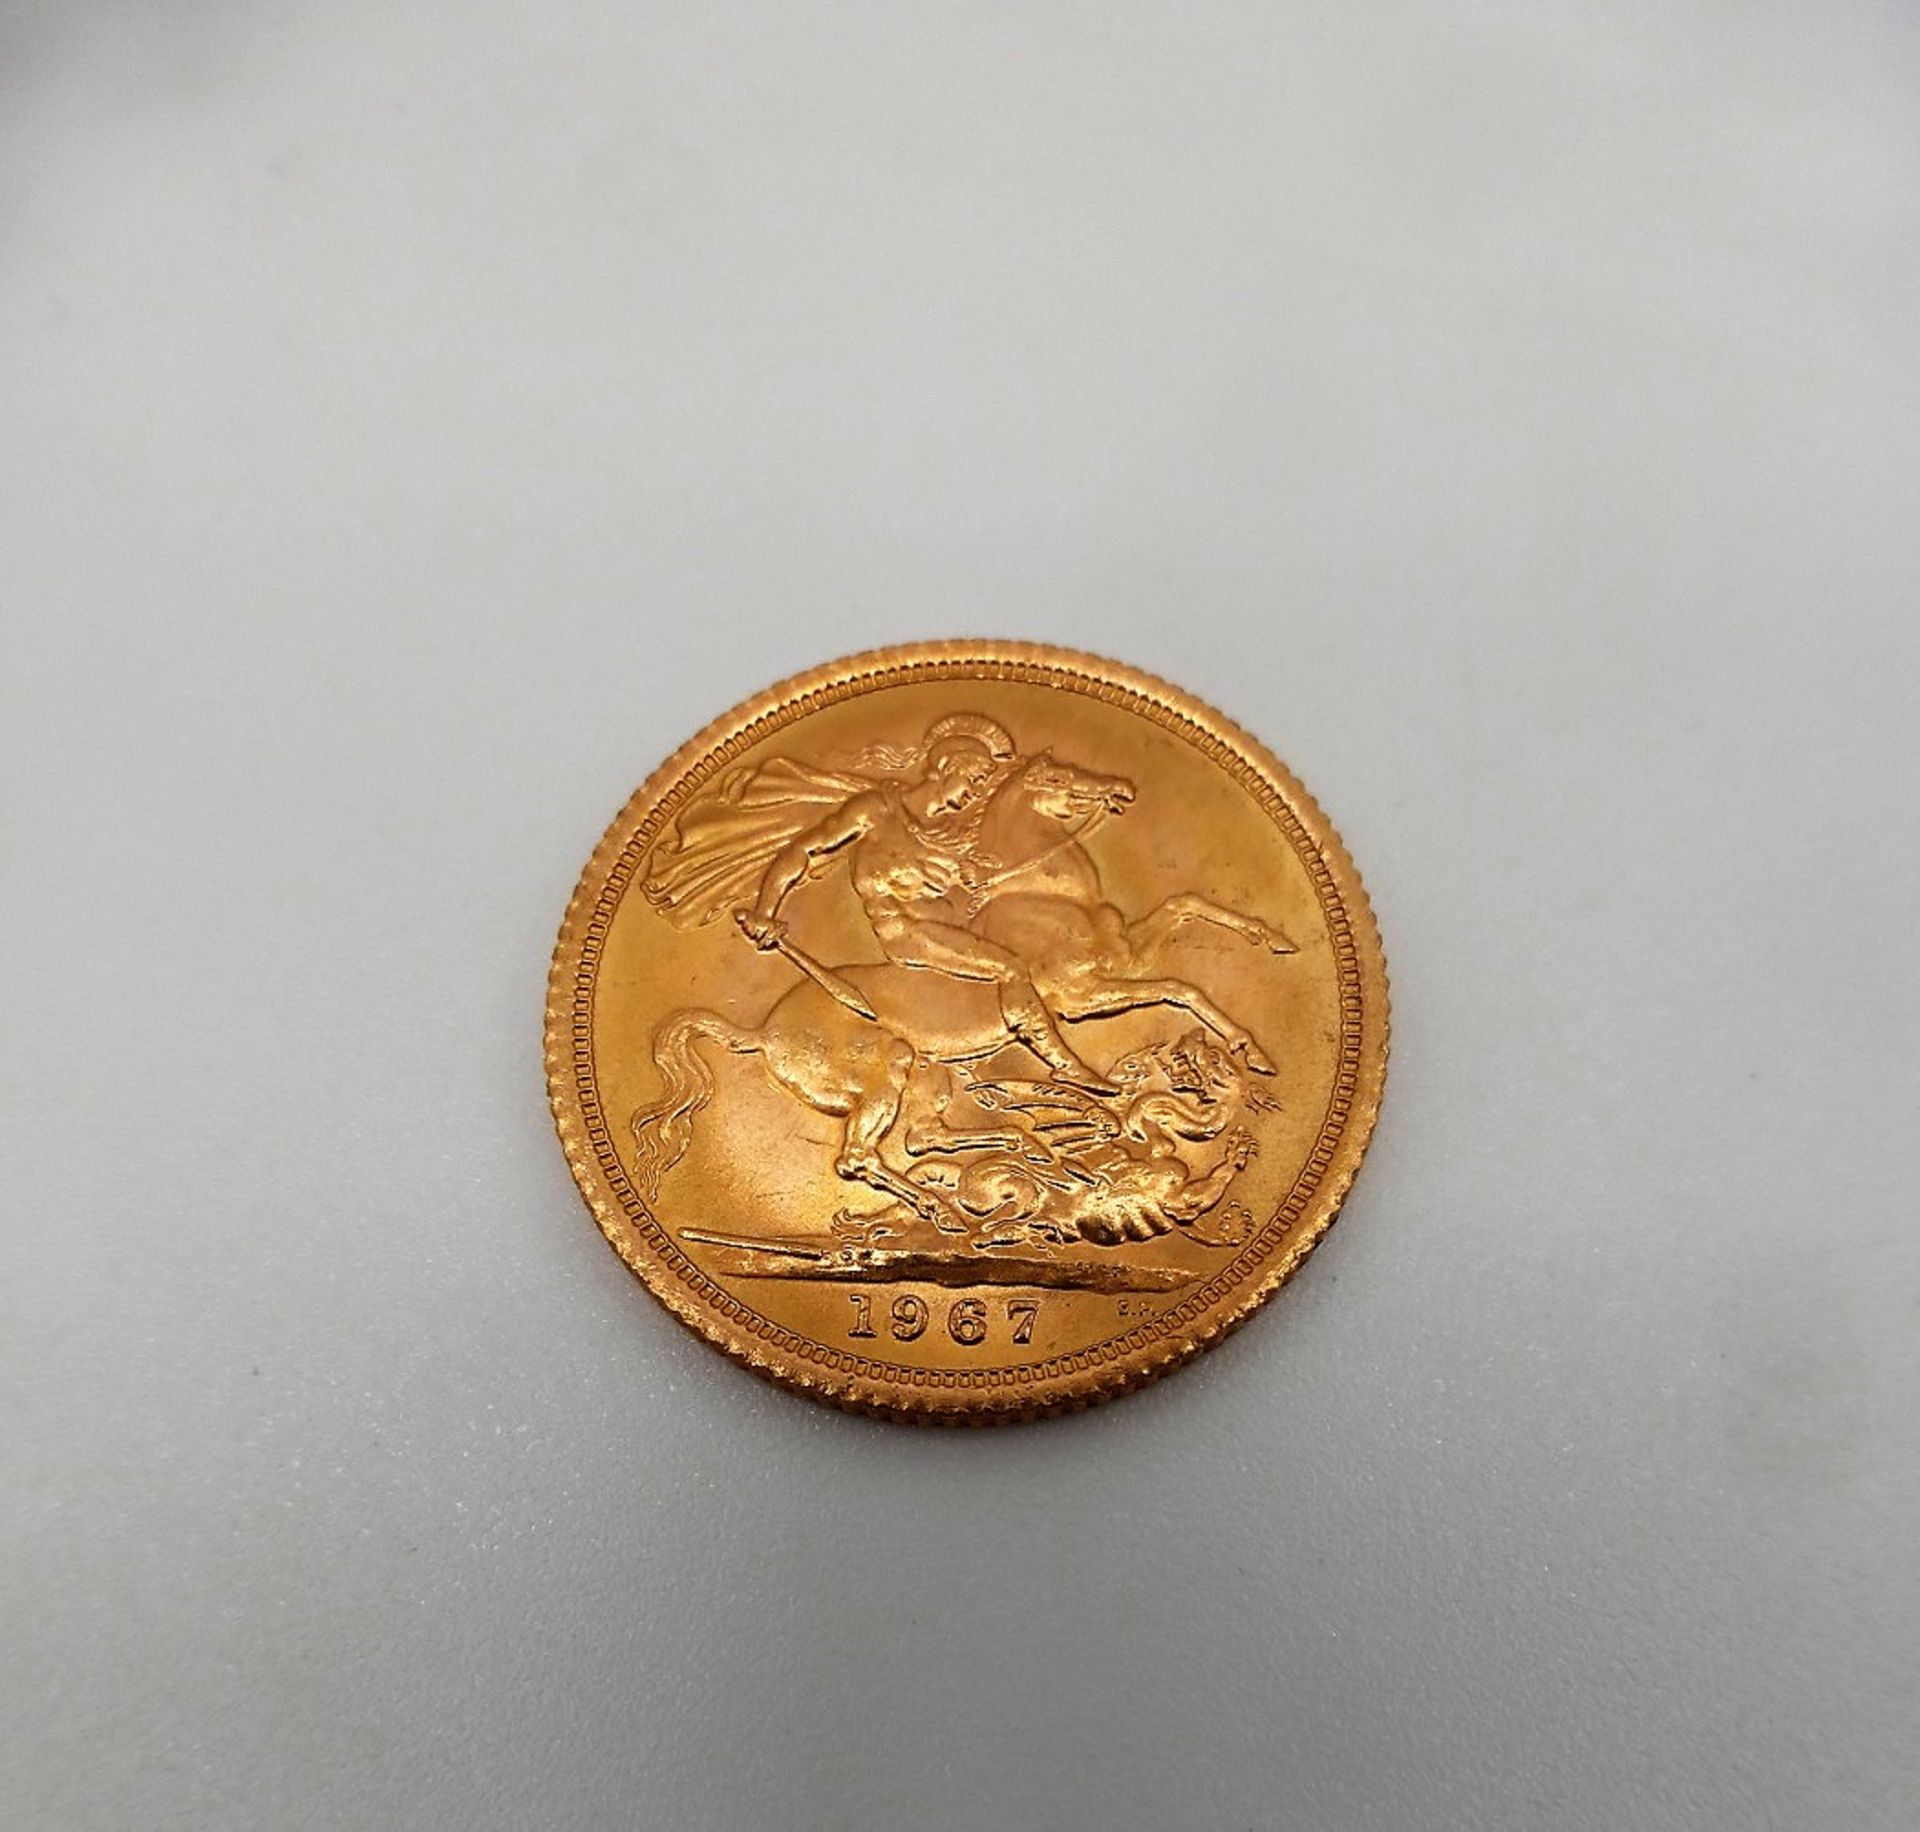 Goldmünze England Sovereign 1967 - Bild 2 aus 2